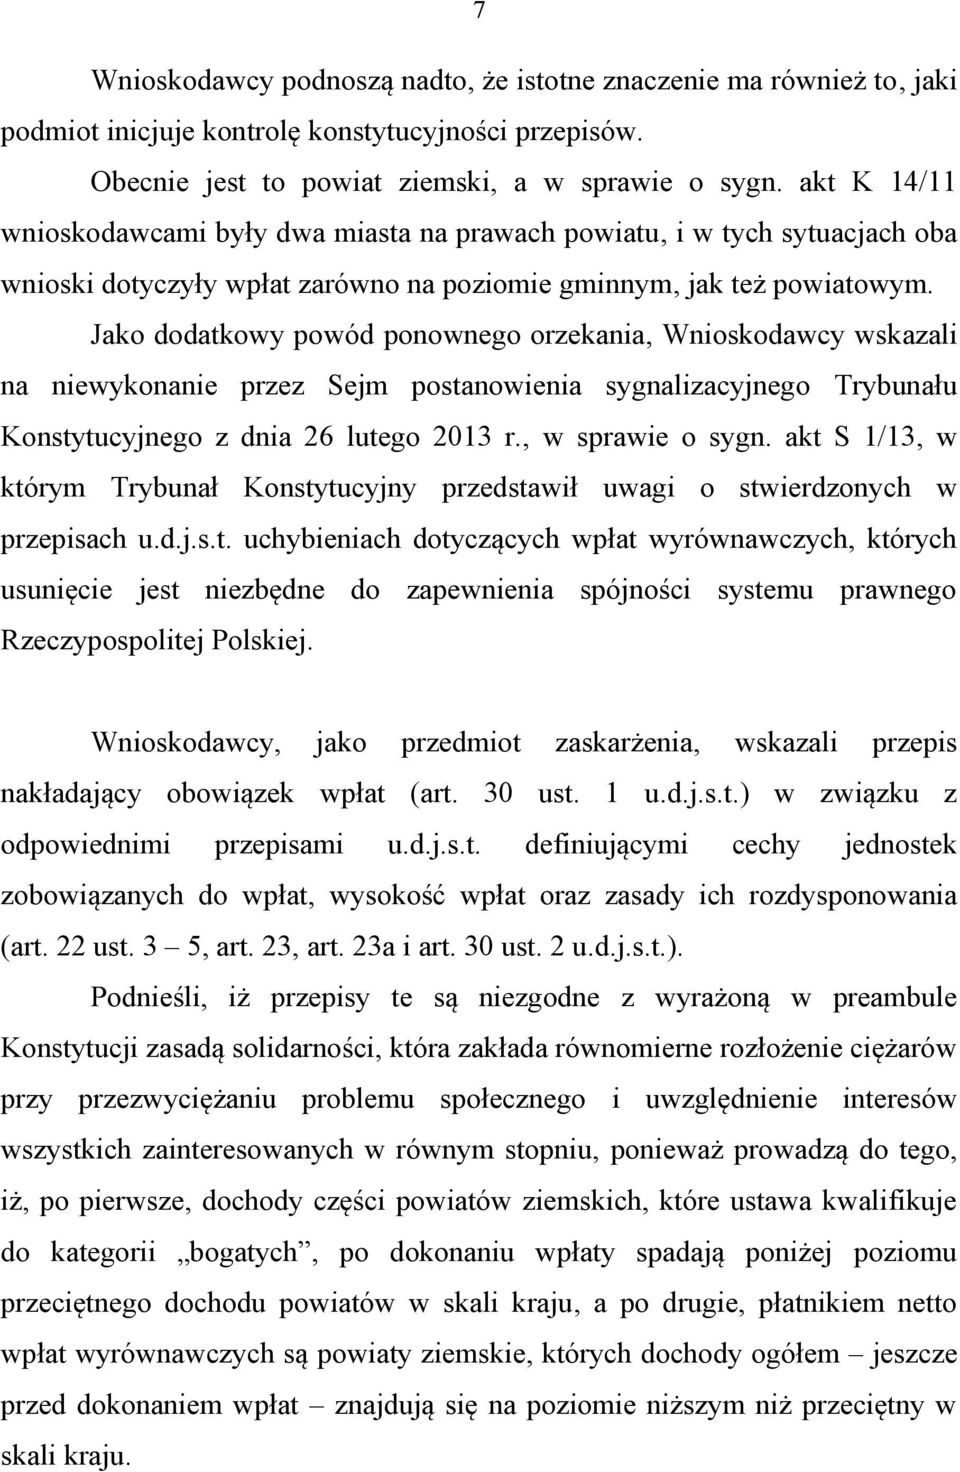 Jako dodatkowy powód ponownego orzekania, Wnioskodawcy wskazali na niewykonanie przez Sejm postanowienia sygnalizacyjnego Trybunału Konstytucyjnego z dnia 26 lutego 2013 r., w sprawie o sygn.